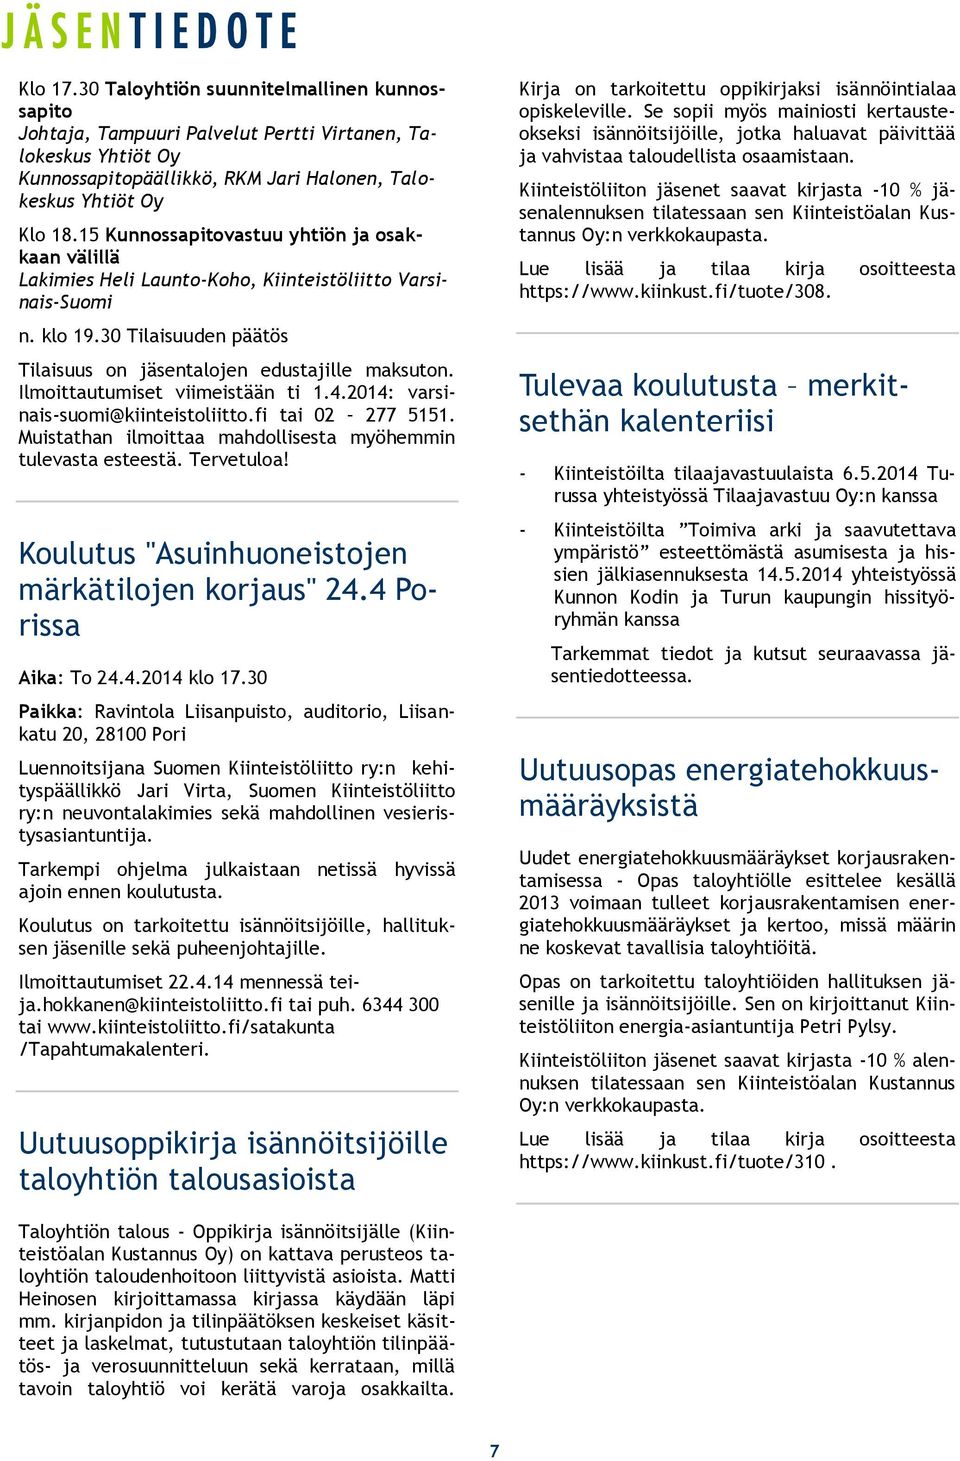 Ilmoittautumiset viimeistään ti 1.4.2014: varsinais-suomi@kiinteistoliitto.fi tai 02 277 5151. Muistathan ilmoittaa mahdollisesta myöhemmin tulevasta esteestä. Tervetuloa!